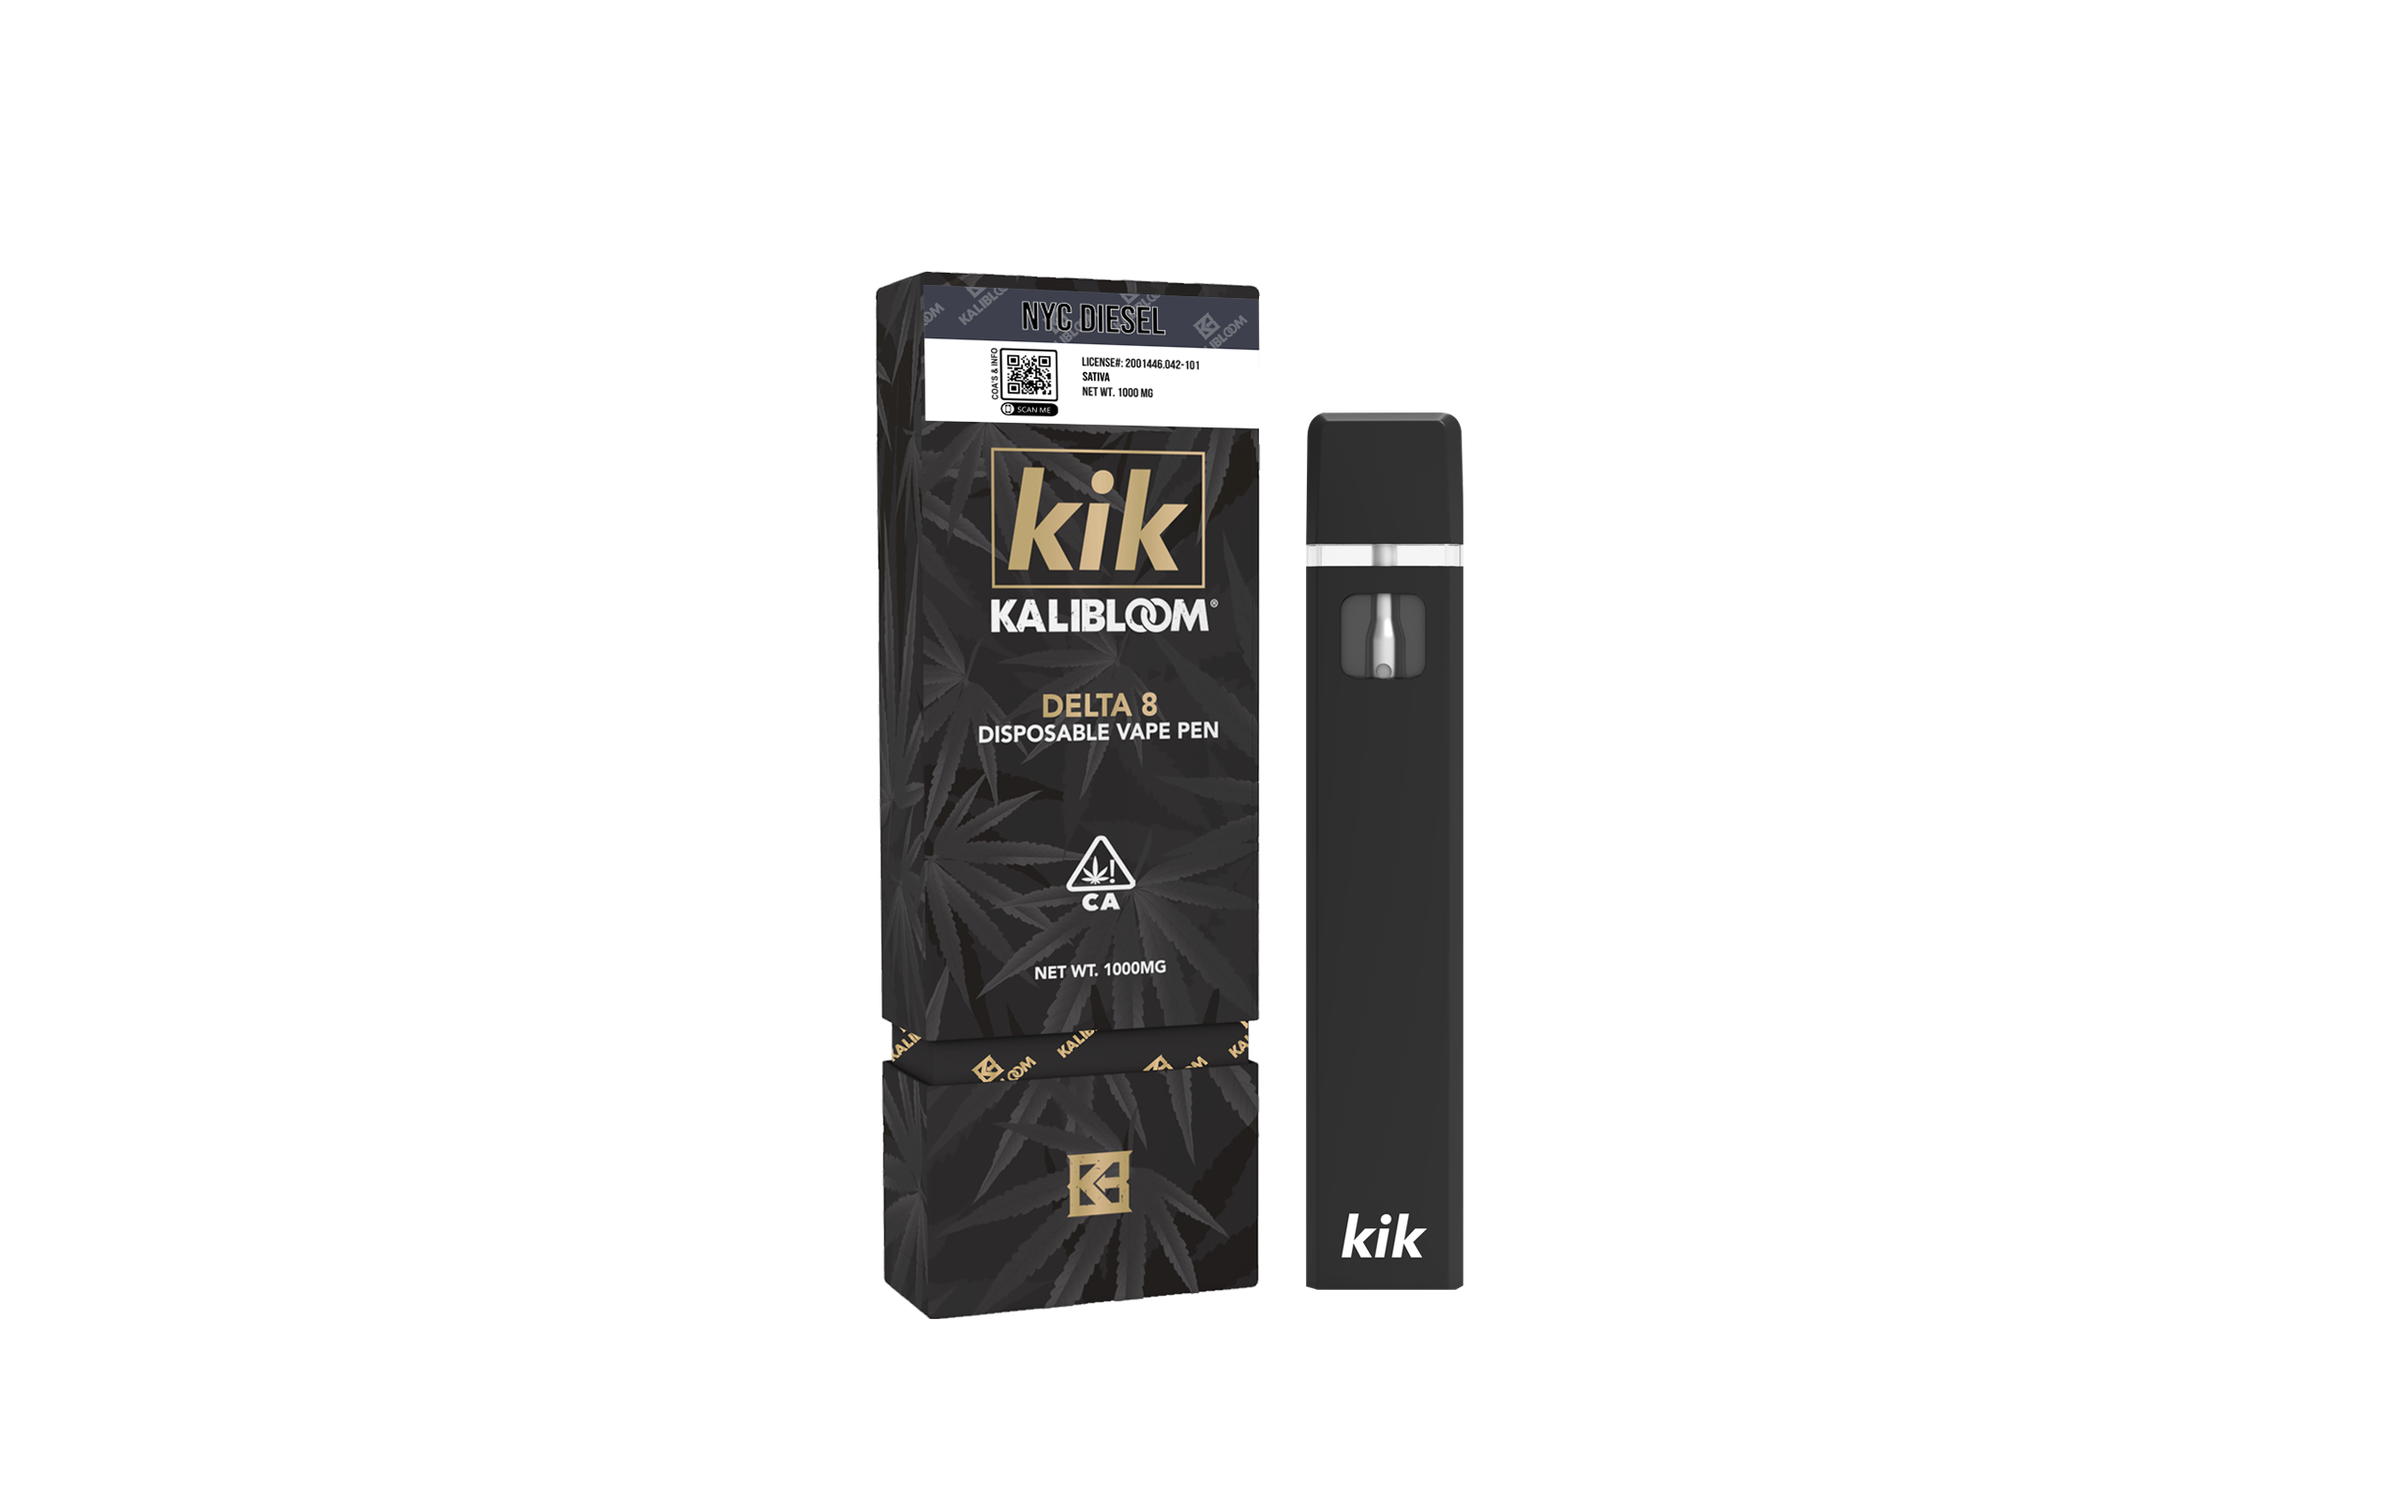 Kik - Disposable Vape Pen - 1 ml - 1000 mg